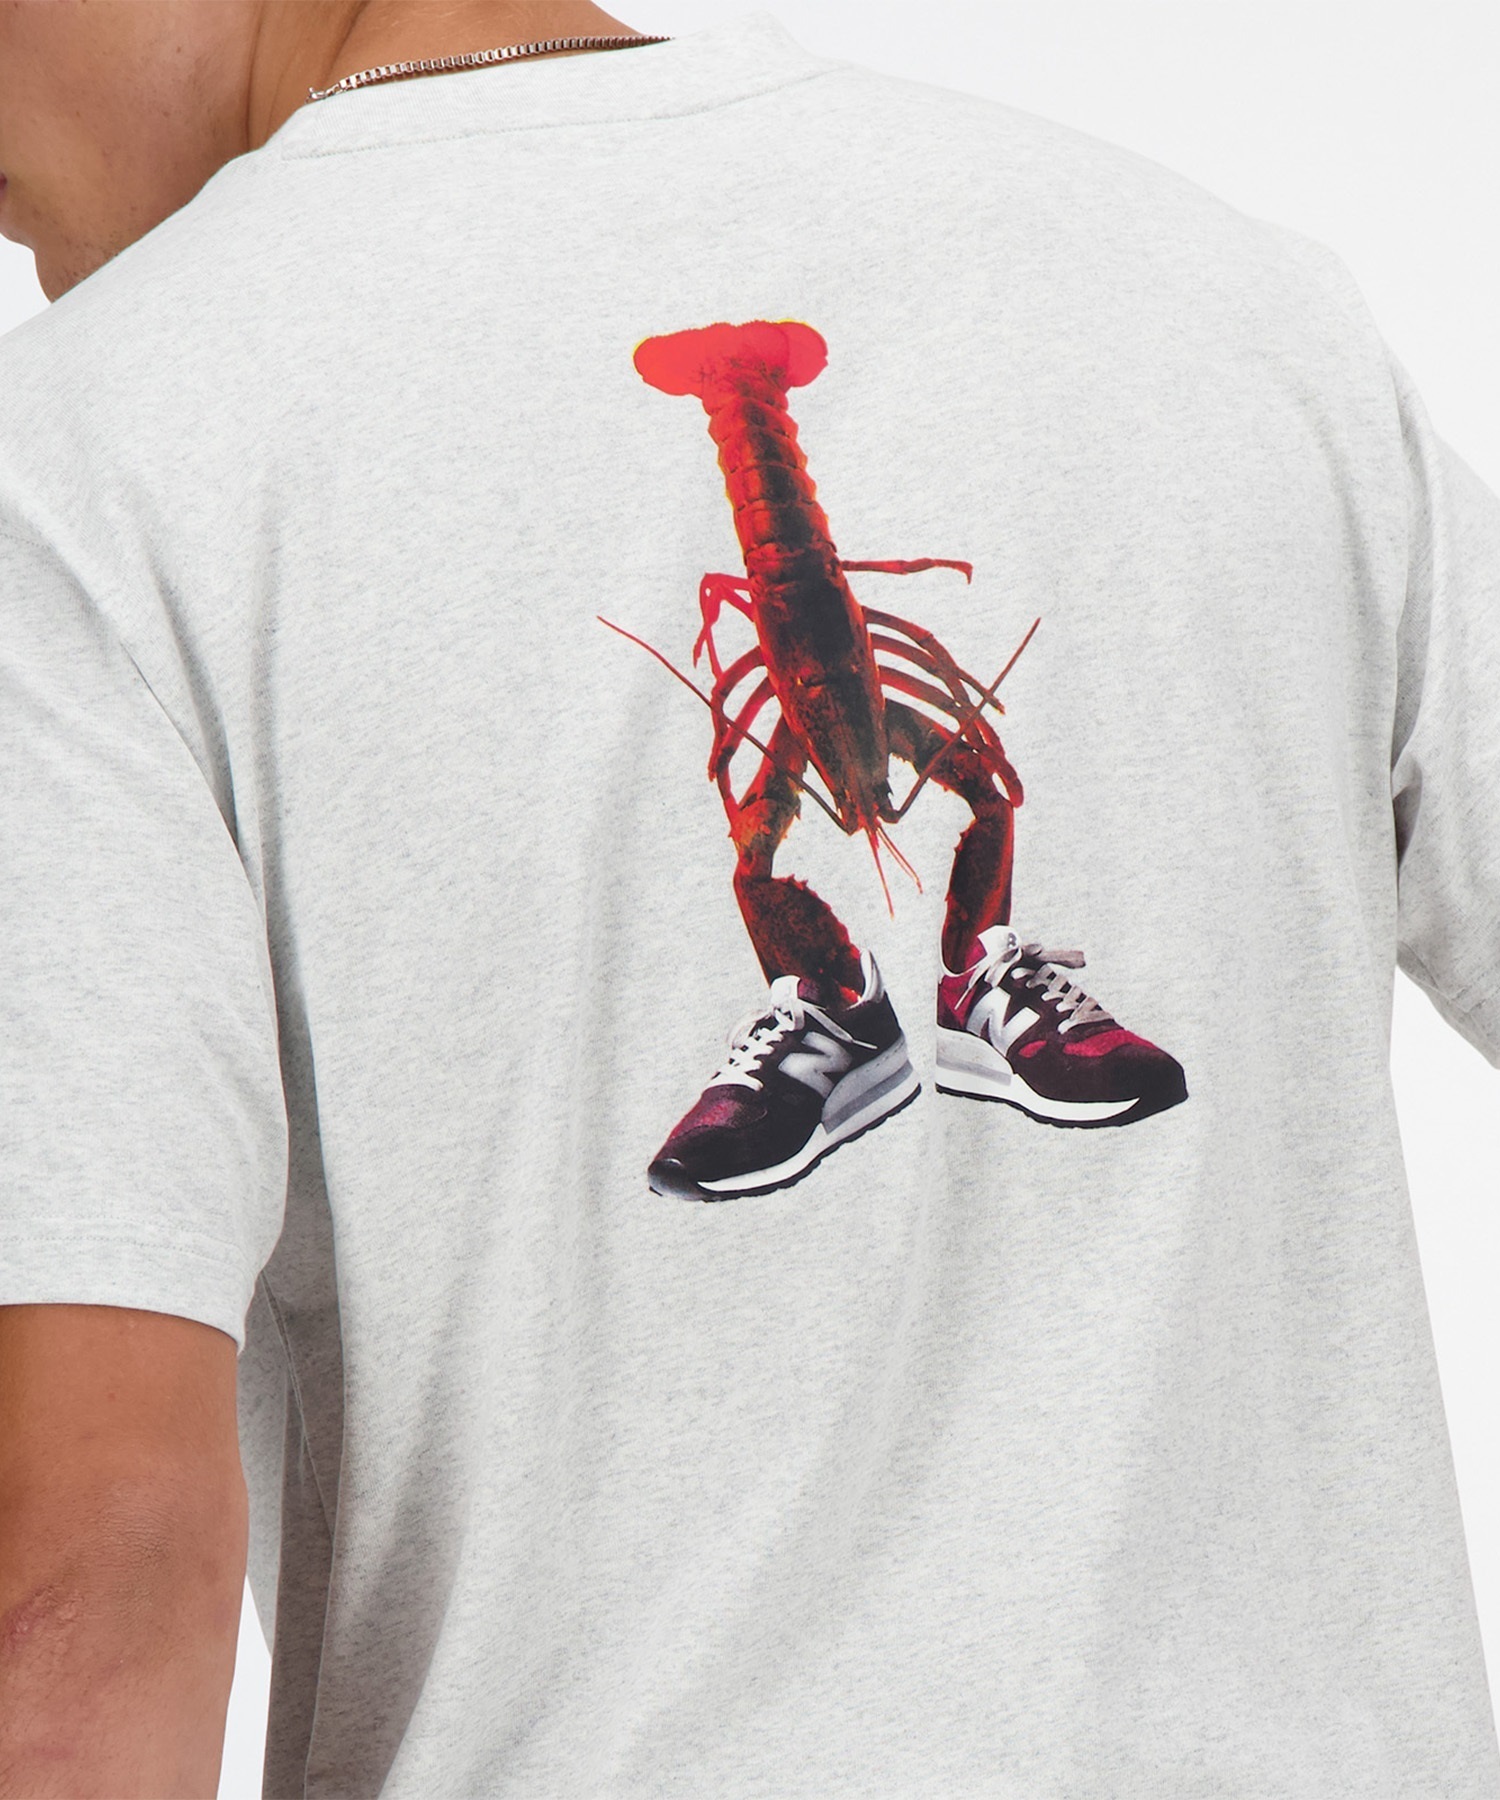 【マトメガイ対象】new balance ニューバランス Athletics Lobster リラックス ショートスリーブTシャツ メンズ 半袖 バックプリント MT41546(AHH-M)